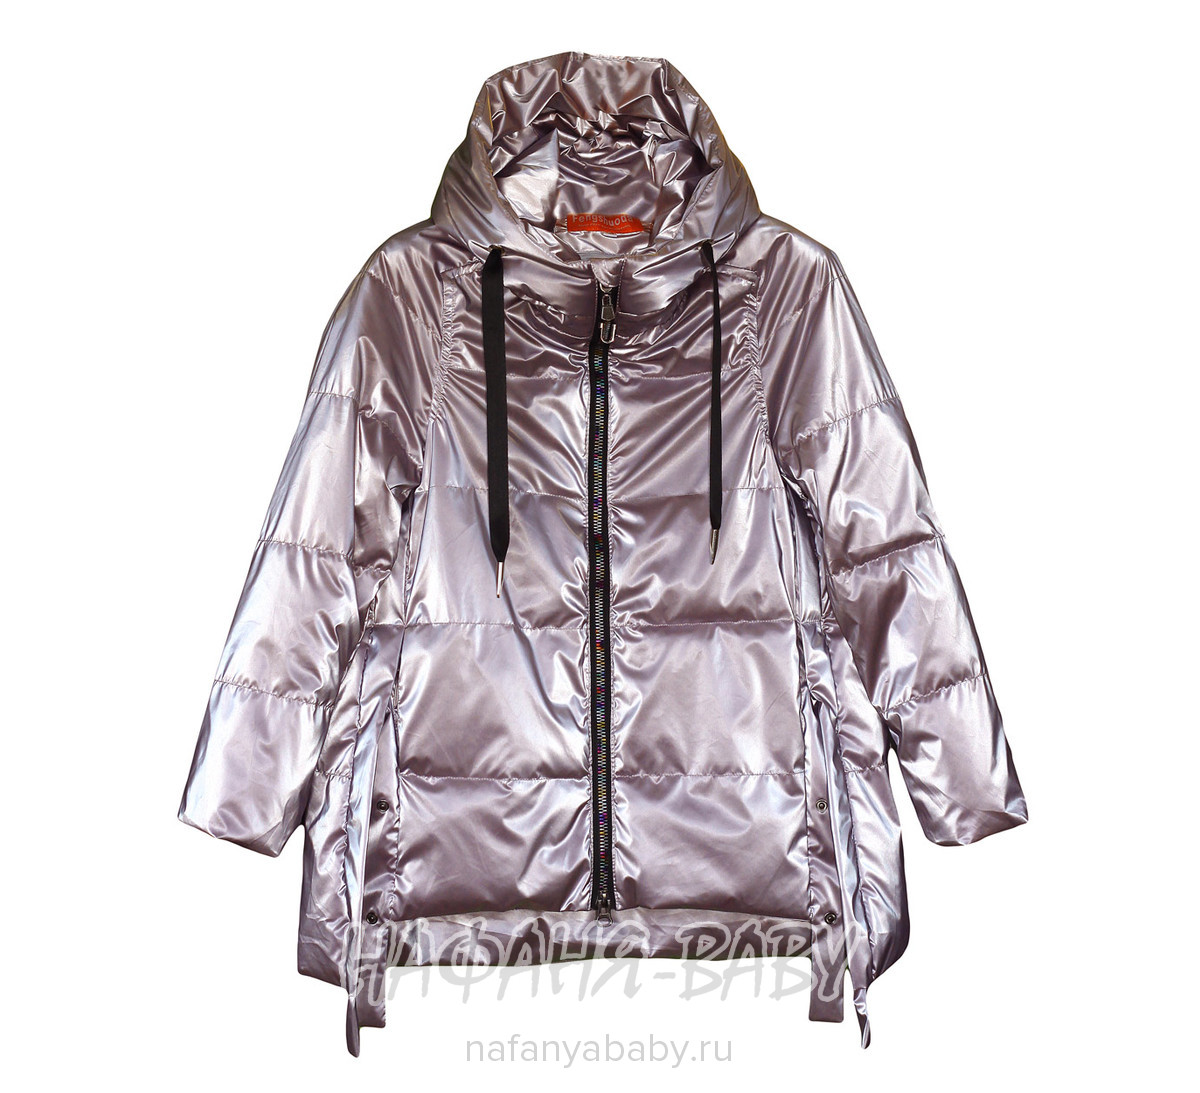 Подростковая демисезонная куртка FSD, купить в интернет магазине Нафаня. арт: 996.